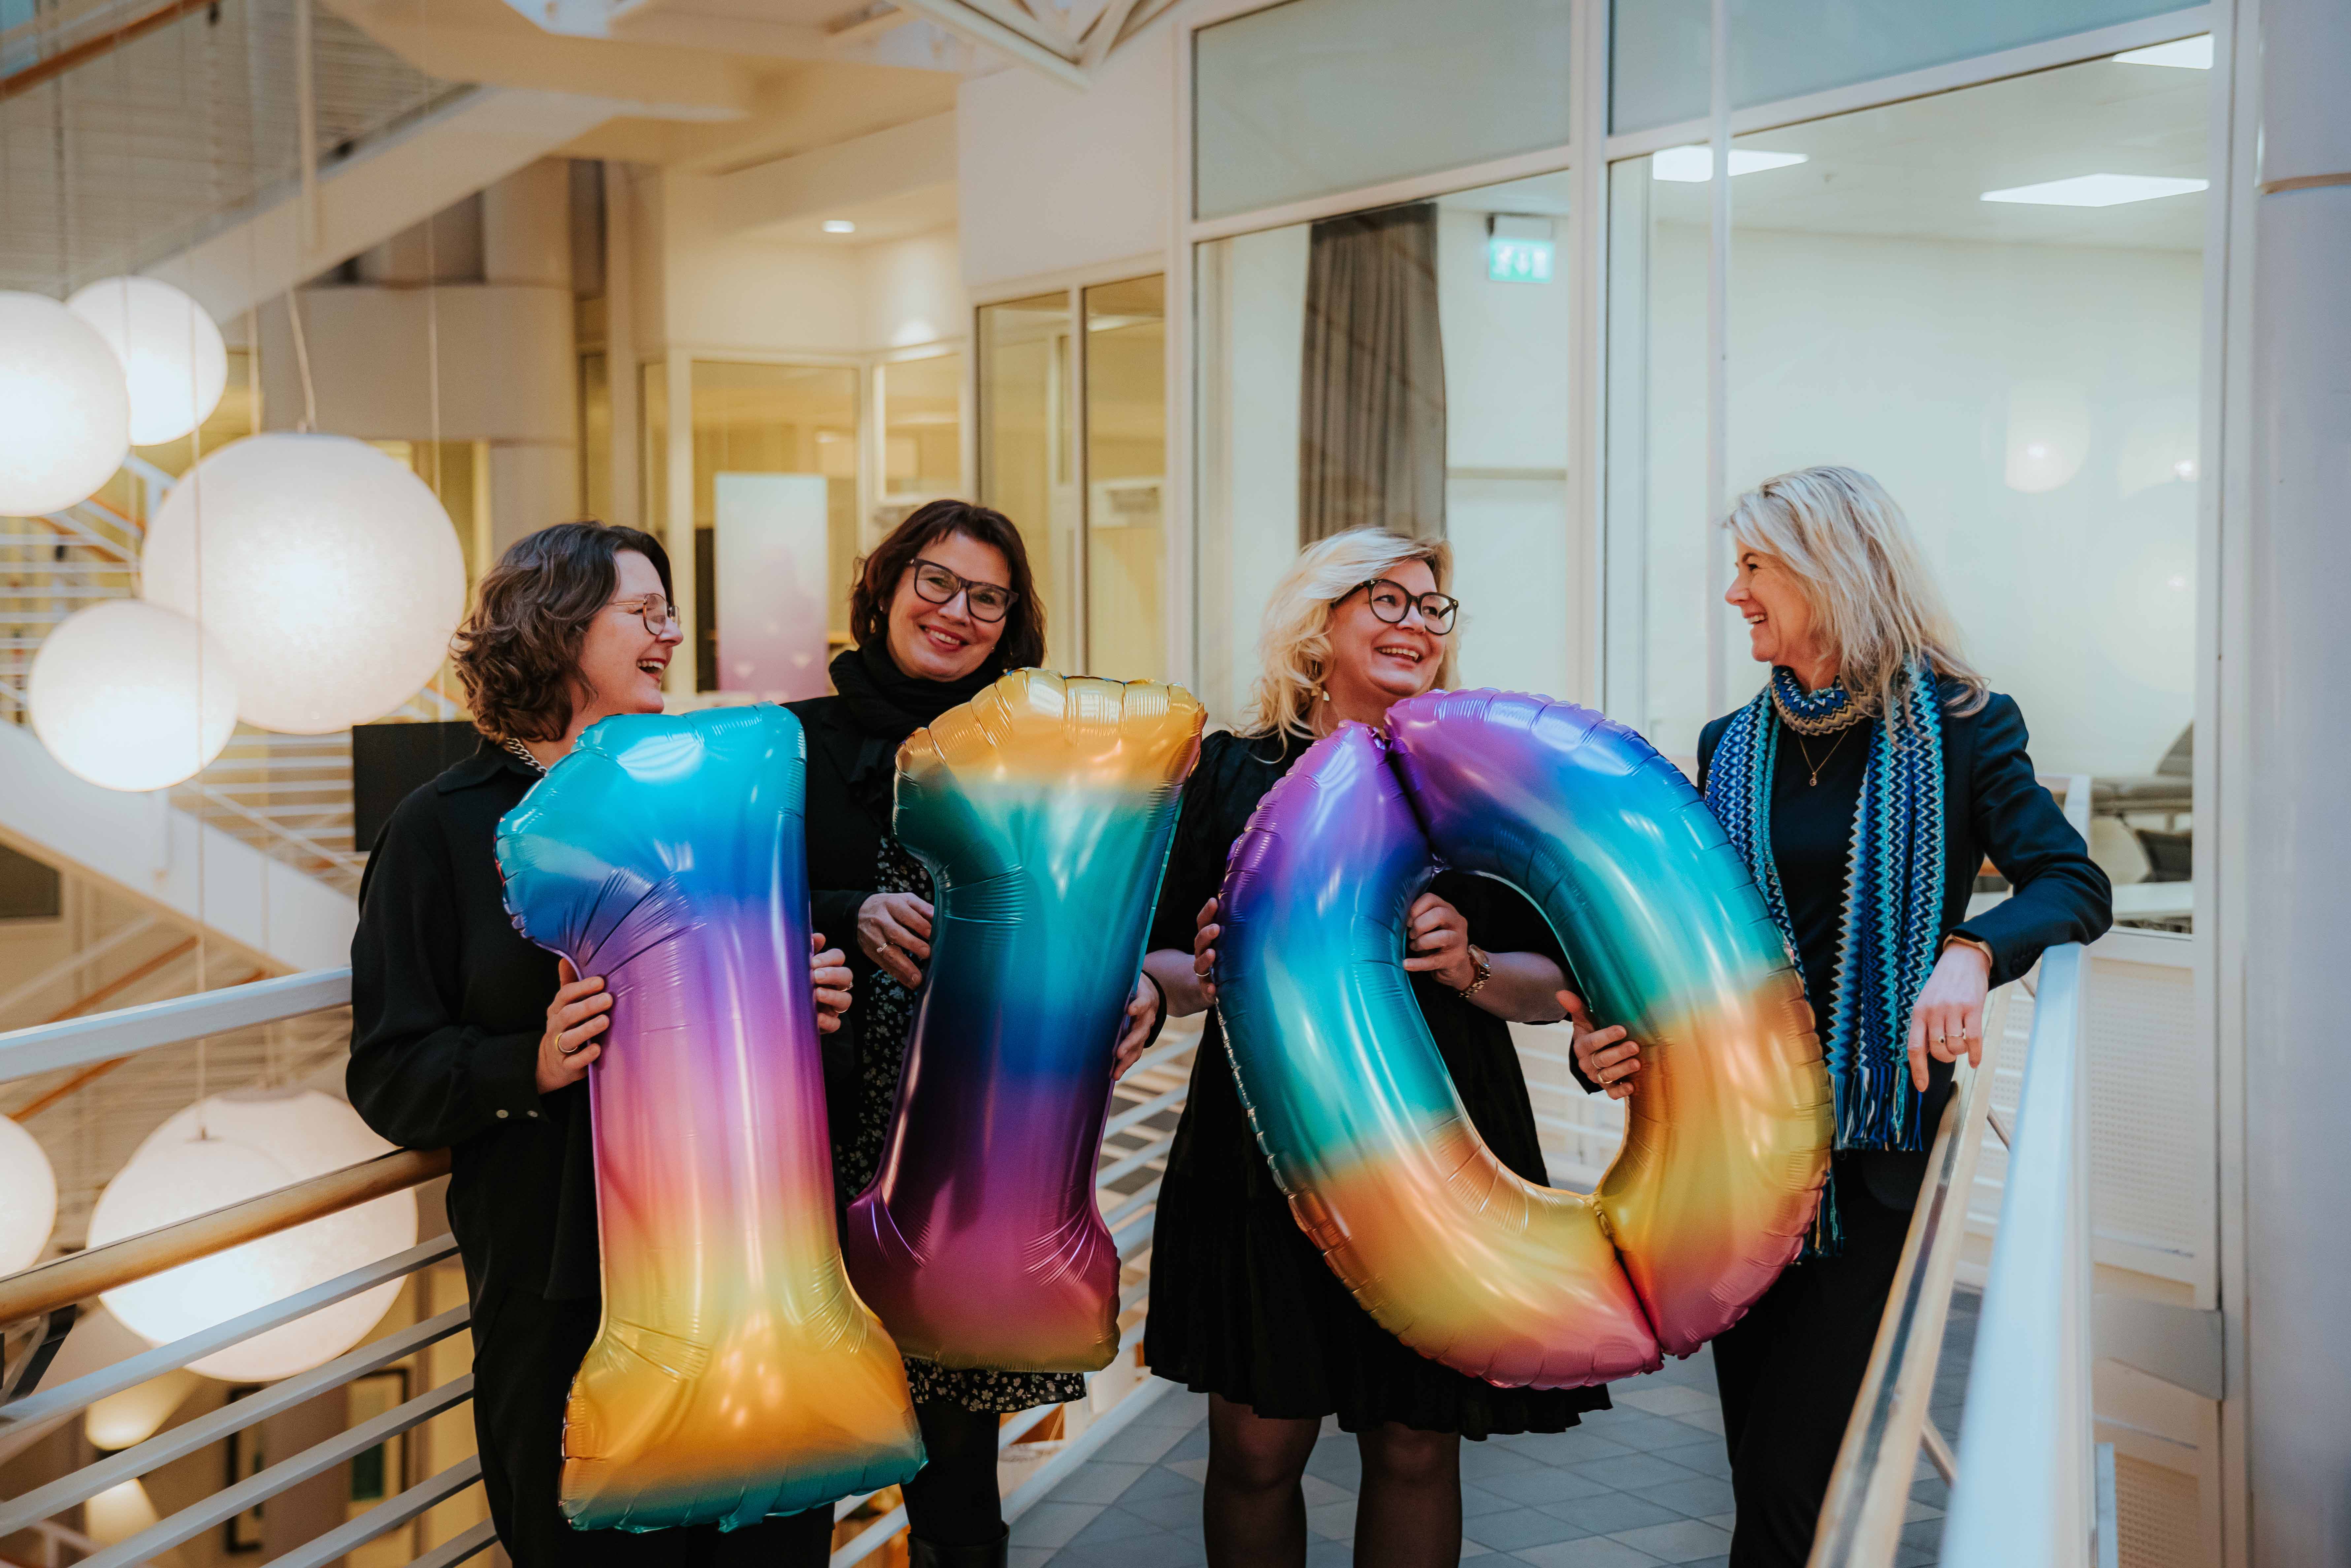 Fire kvinner står smilende og holder store ballonger som viser 110.